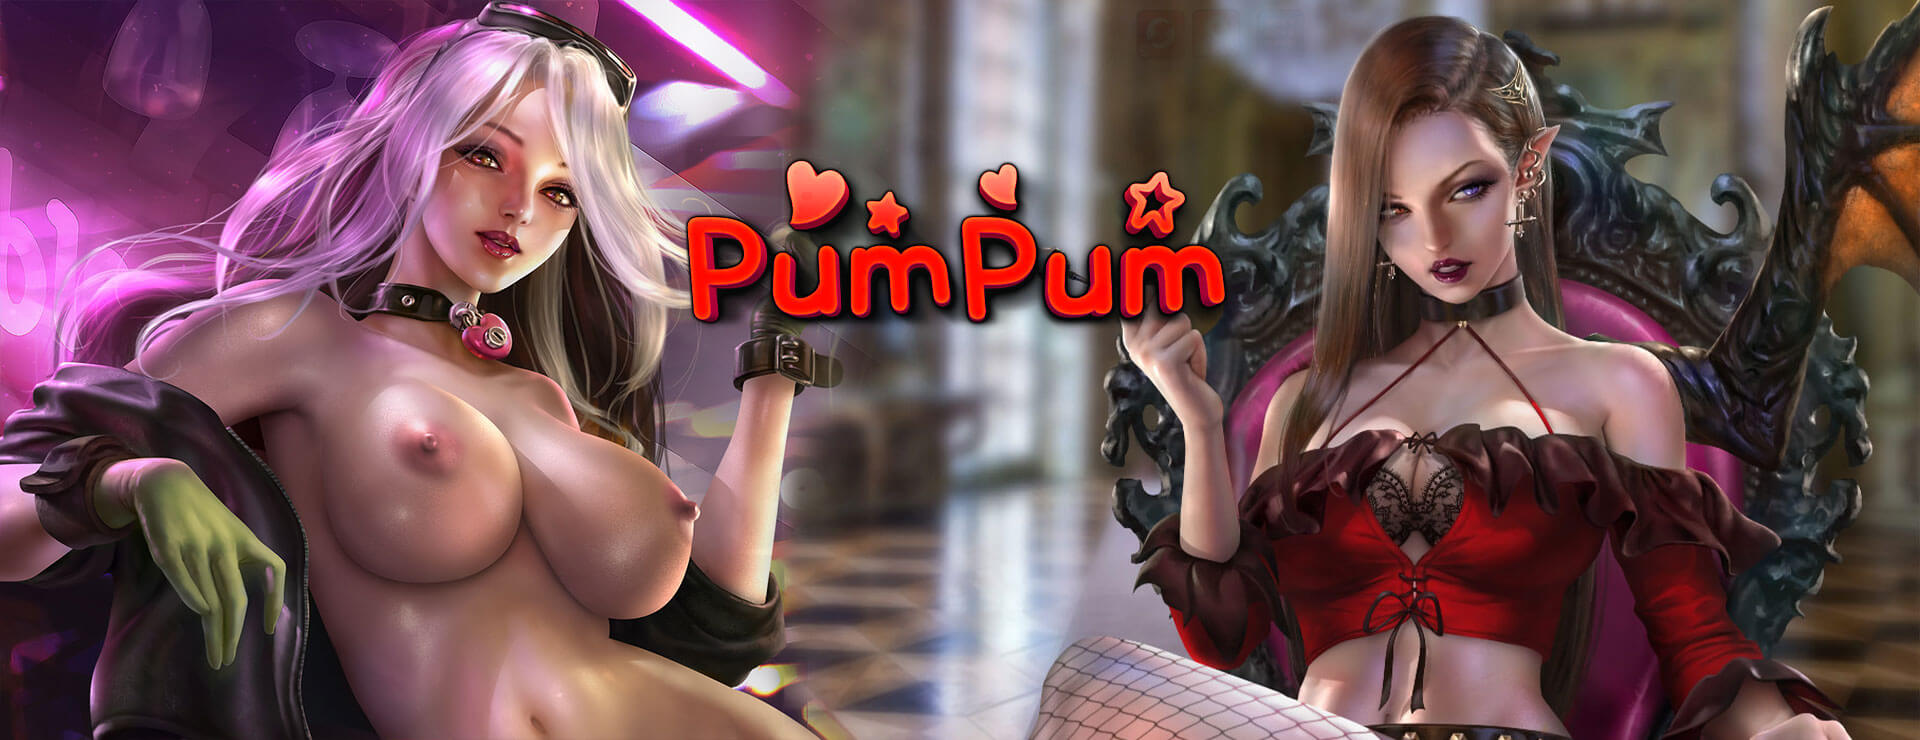 PumPum - 益智游戏 遊戲